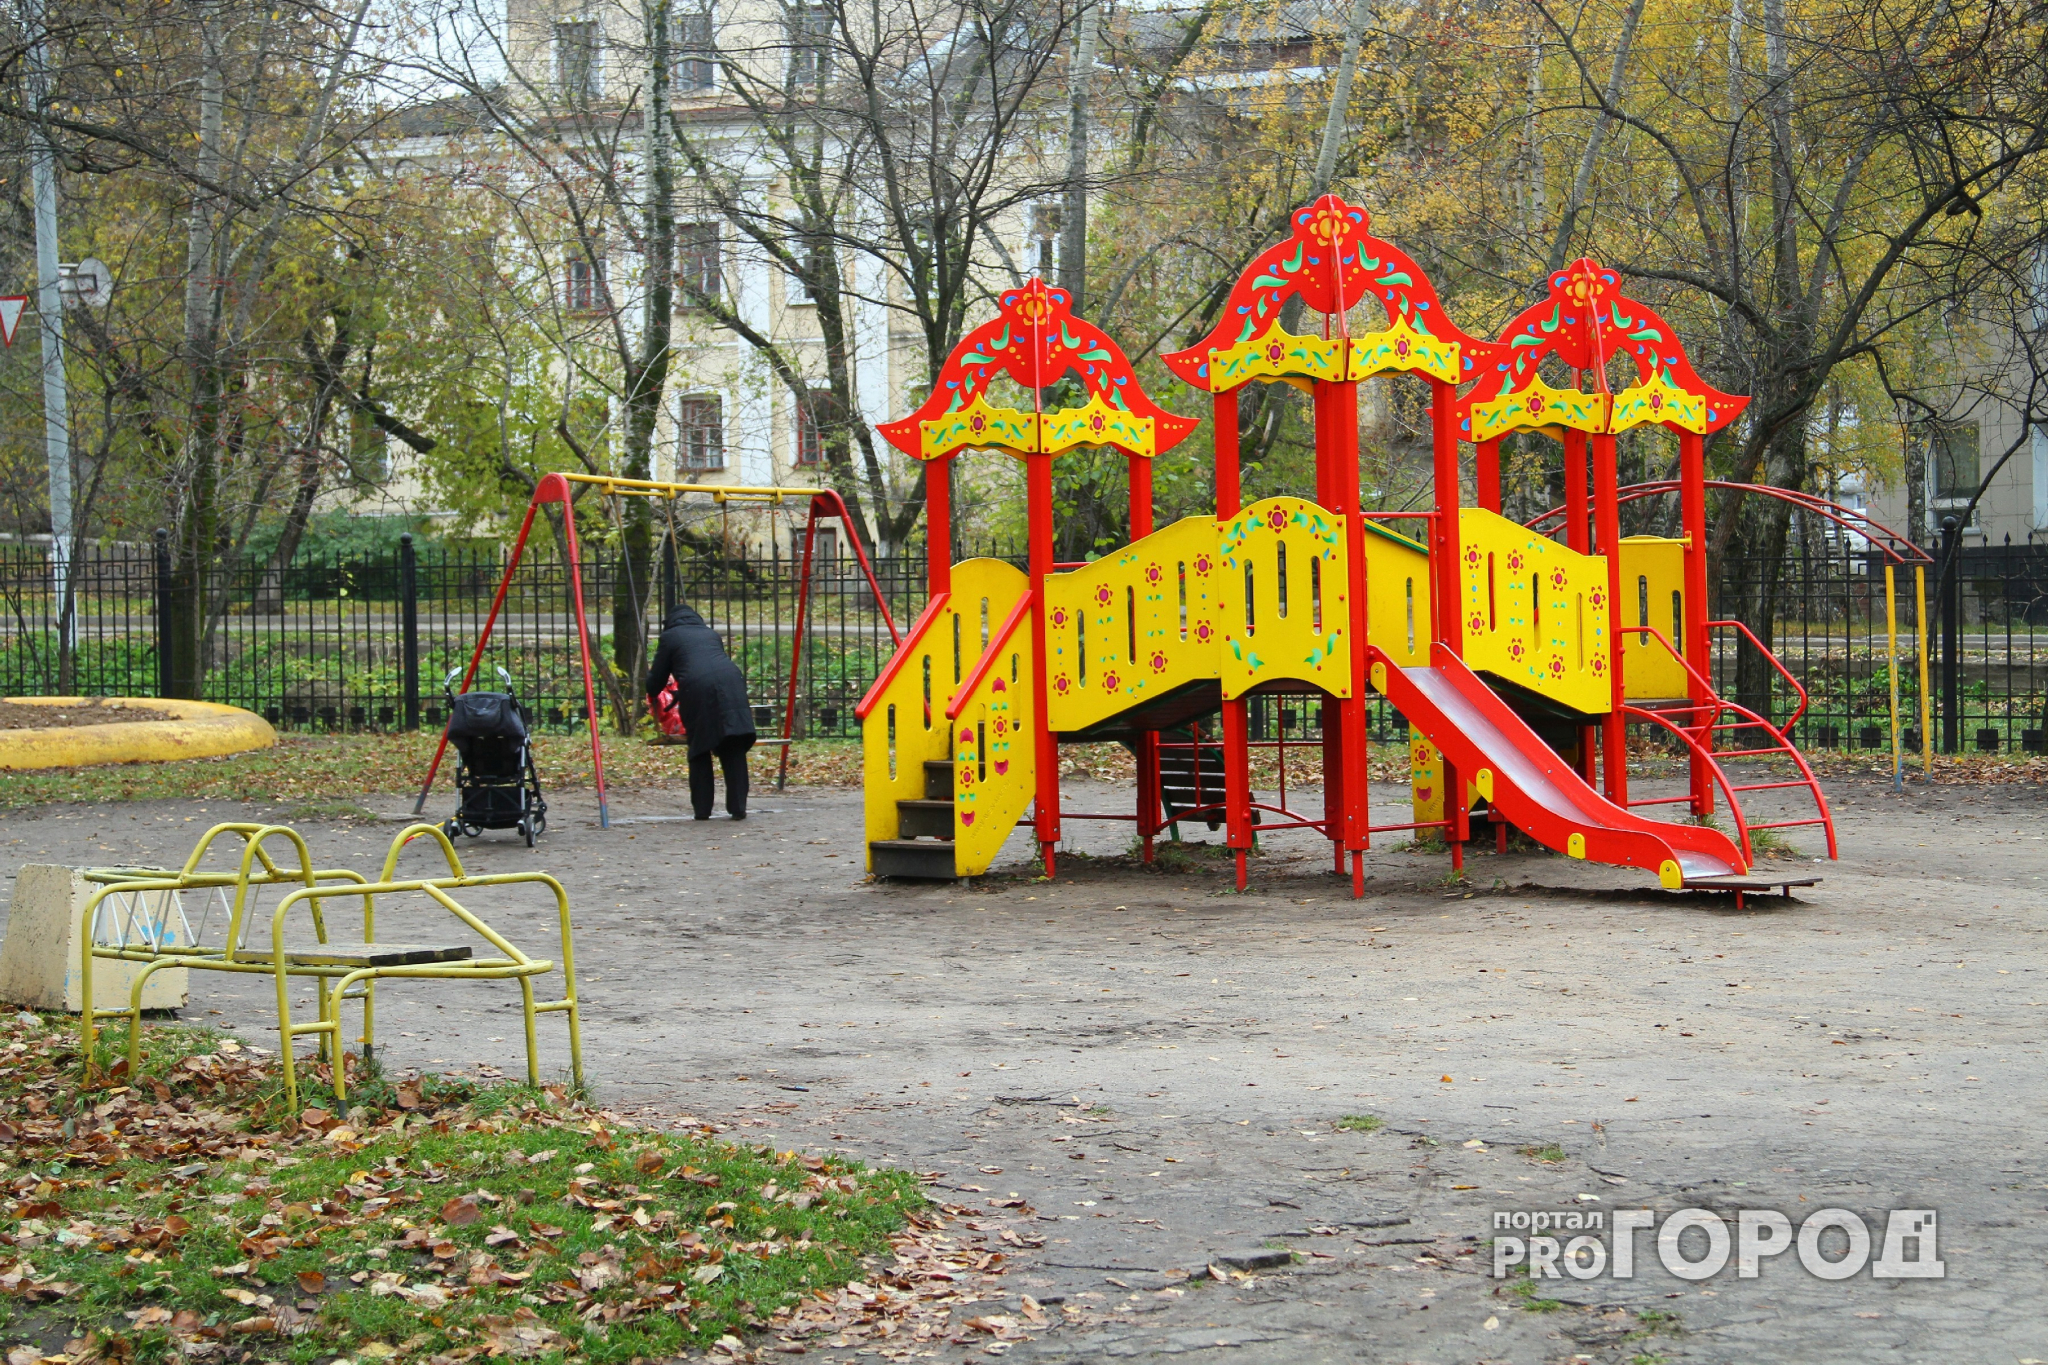 В Сыктывкаре из-за угрозы взрыва оцепили детскую площадку